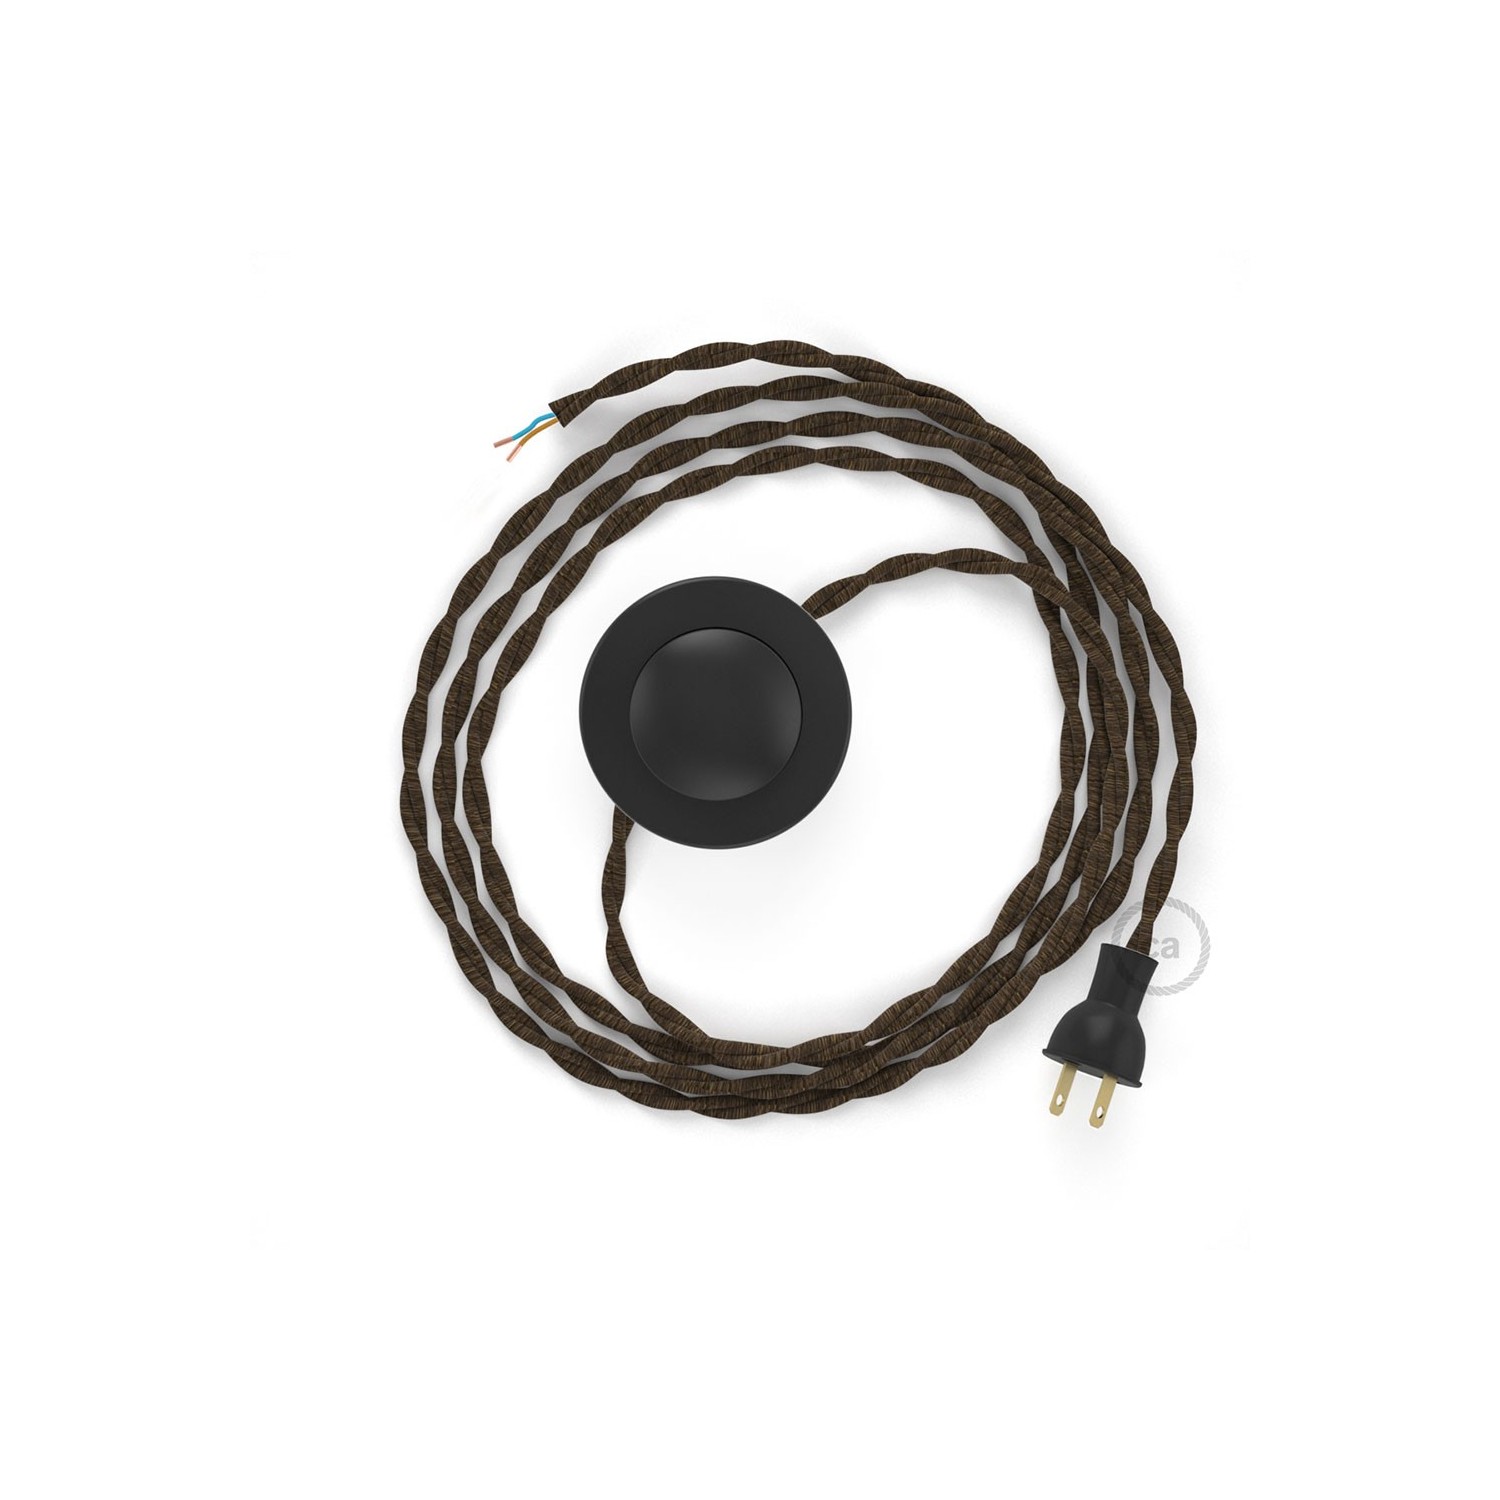 Cableado para lámpara de piso, cable TN04 Lino Natural Café 3 m. Elige tu el color de la clavija y del interruptor!